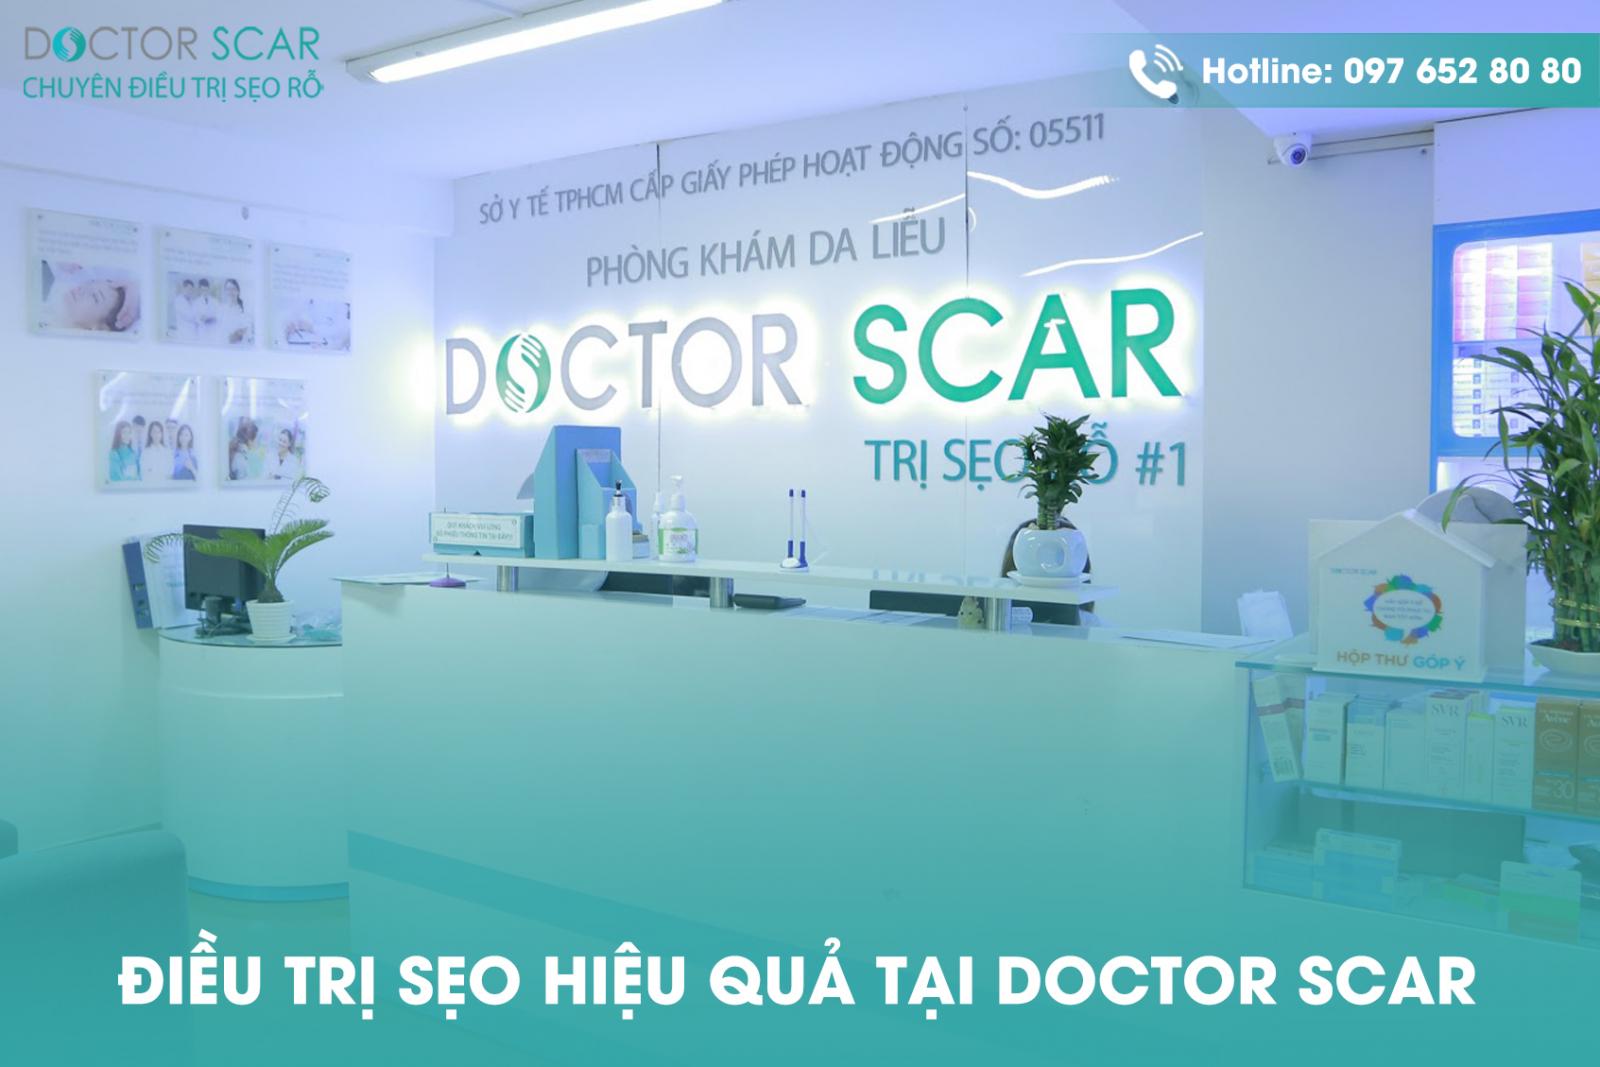 Doctor Scar là phòng khám da liễu chuyên điều trị sẹo rỗ hiệu quả.